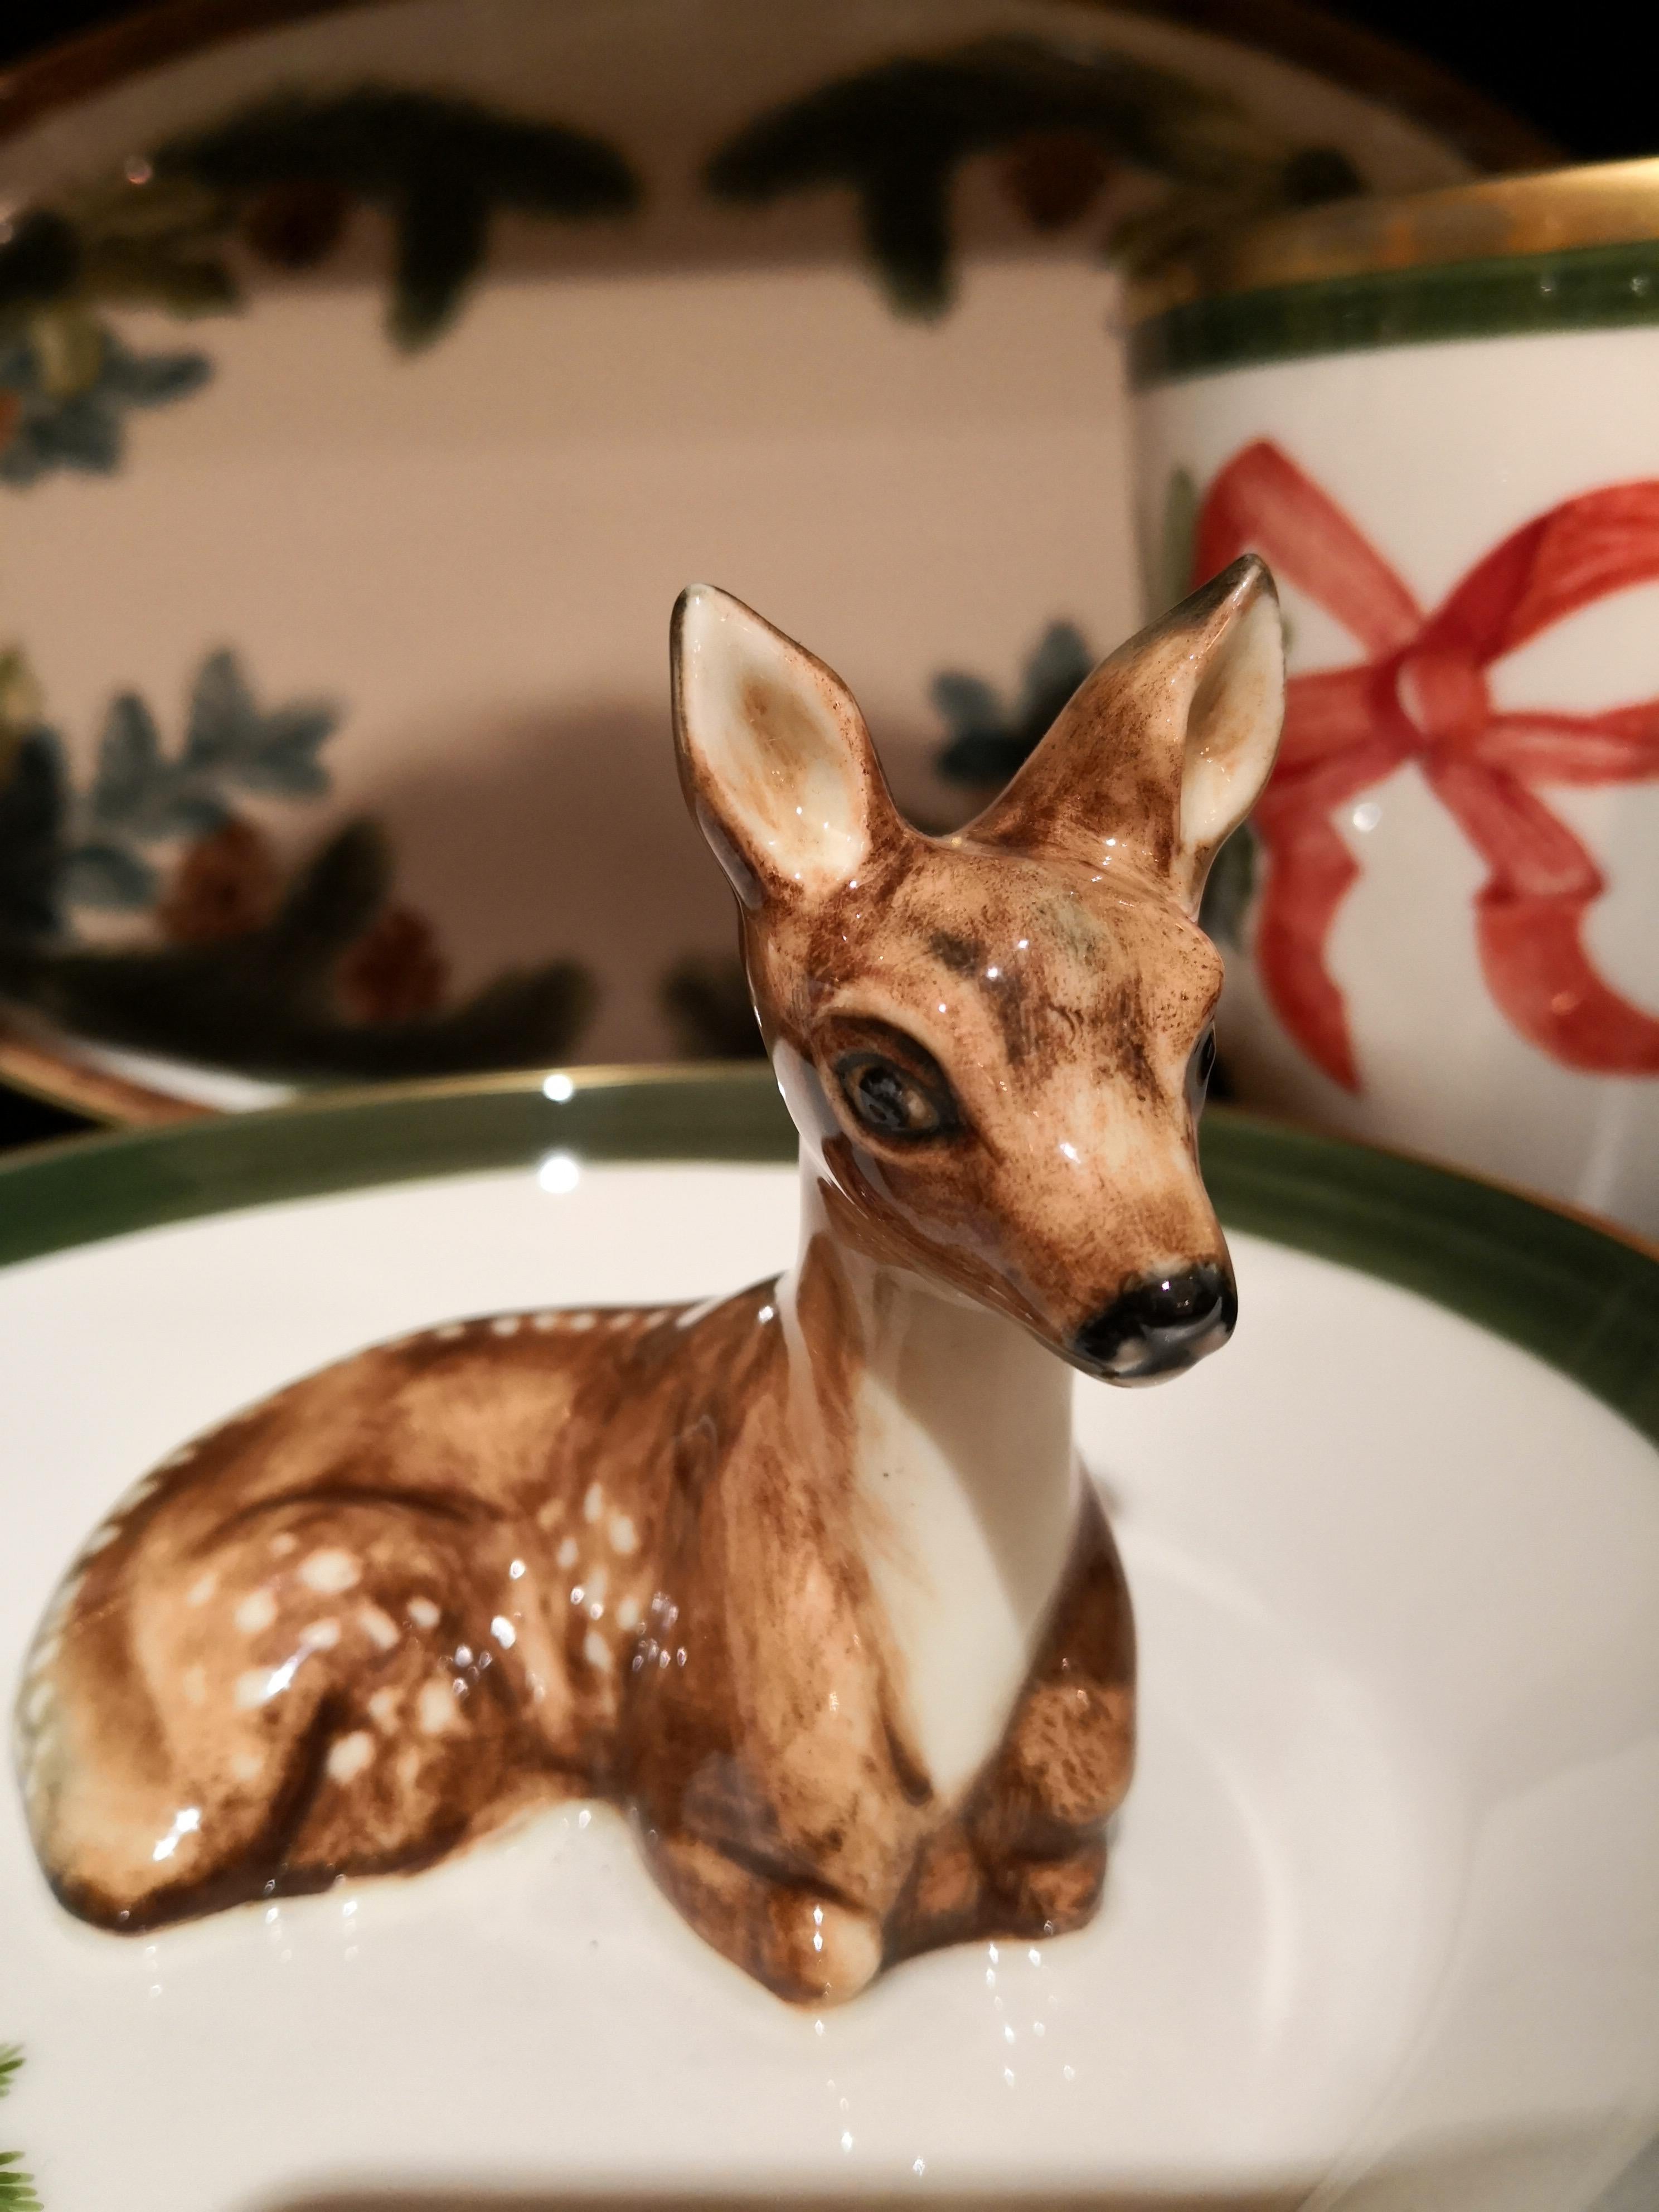 Vollständig handgefertigte Porzellanschale mit einer freihändig gemalten, naturalistischen Bambi-Figur in Braun. Das Bambi sitzt in der Mitte der Schale, um Nüsse oder Süßigkeiten zu dekorieren. Umrandet mit einer feinen 24-karätigen Goldlinie.